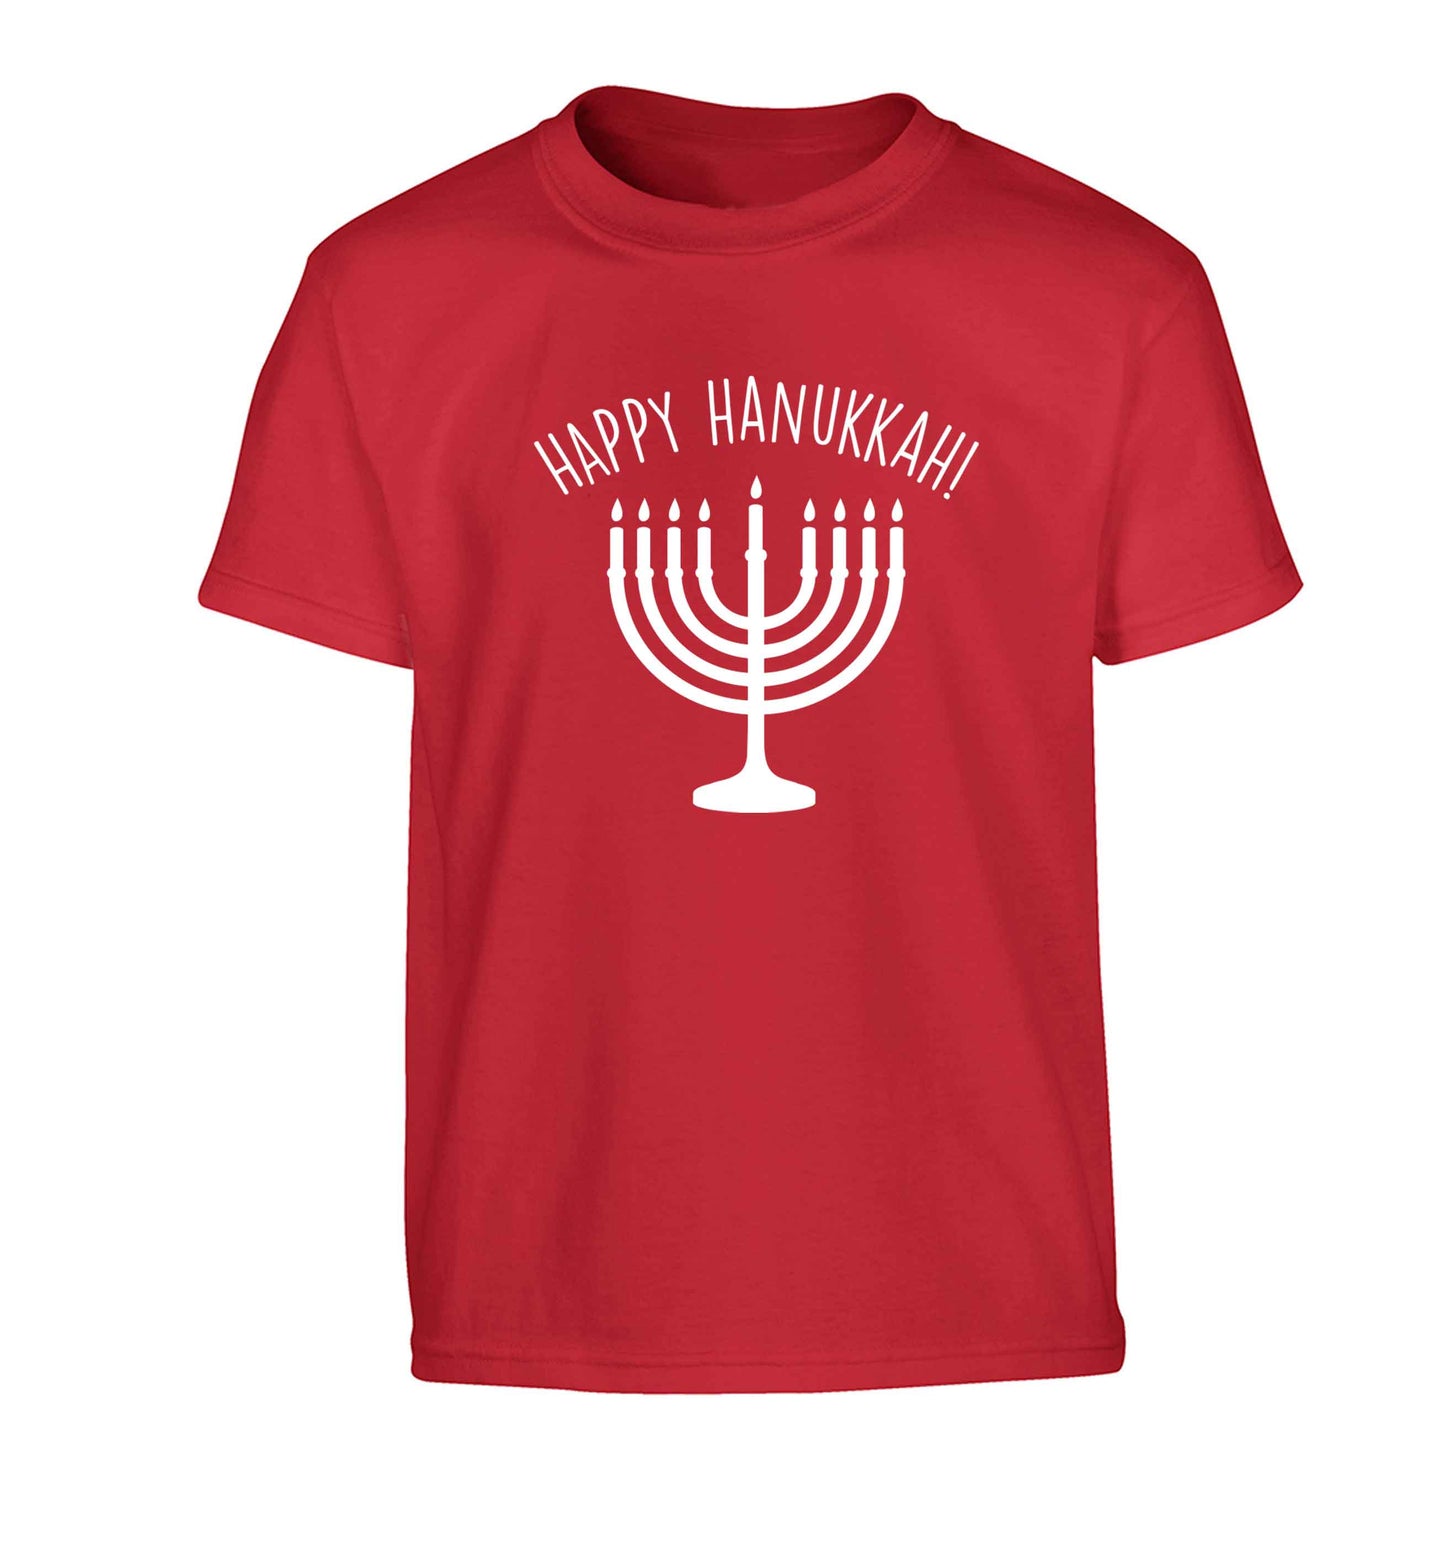 Happy hanukkah Children's red Tshirt 12-13 Years